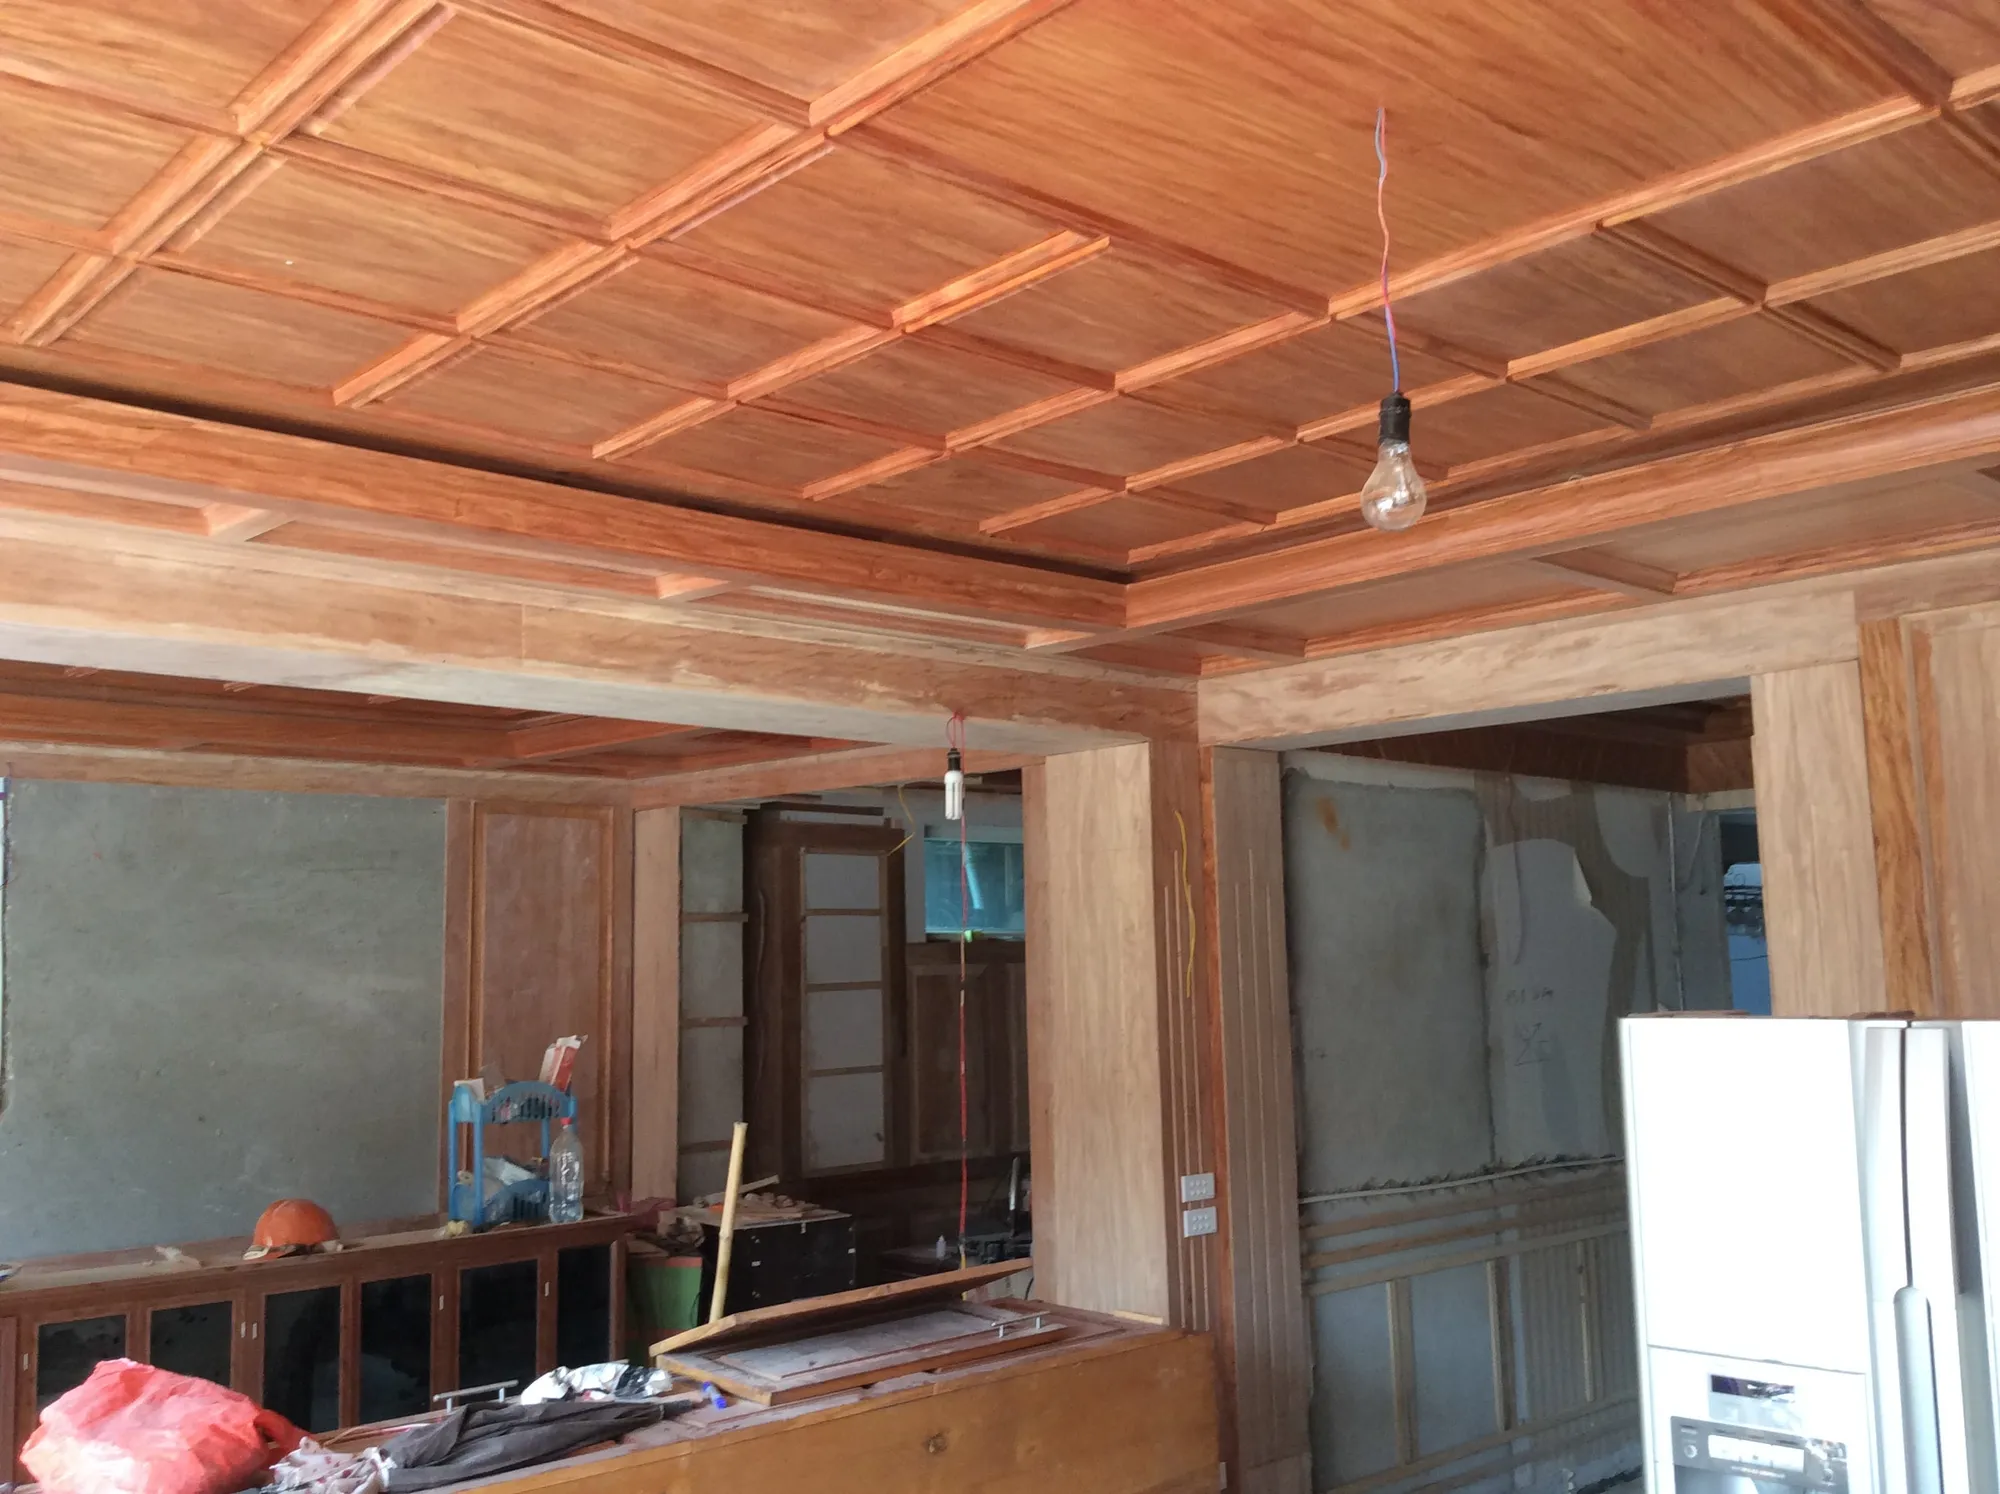 Thiết kế la phông cho trần nhà bằng gỗ tự nhiên đơn giản